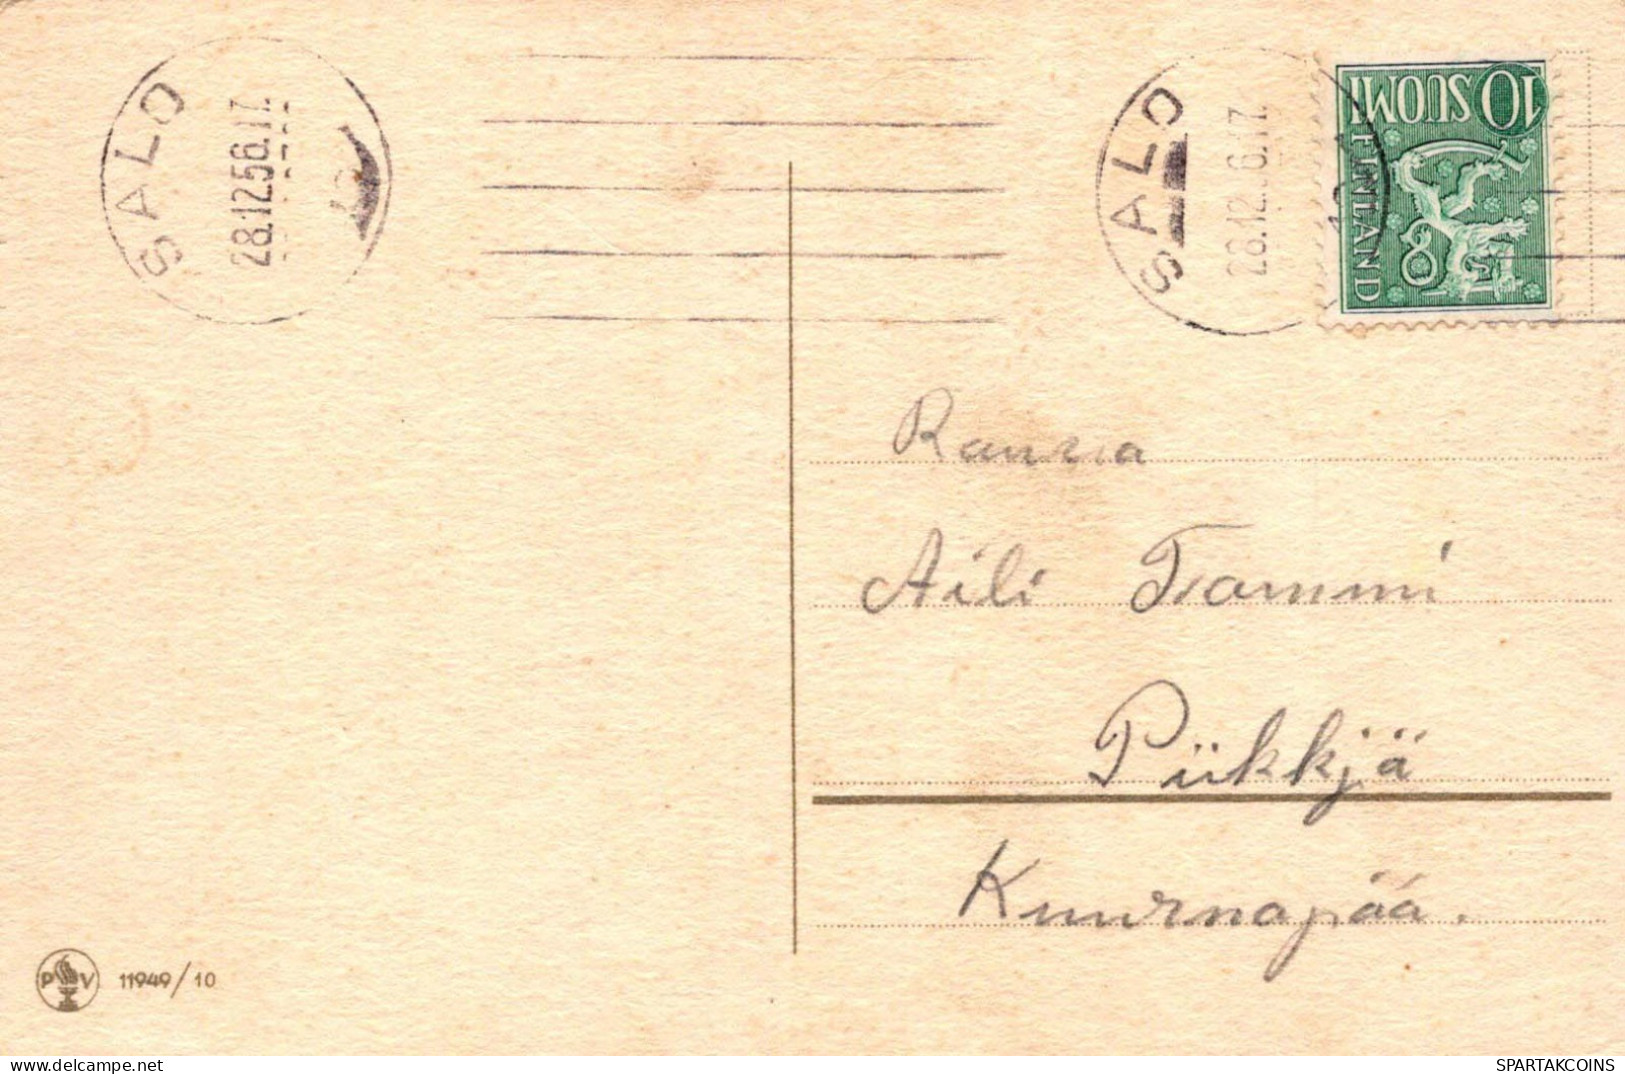 Bonne Année Noël FLEURS Vintage Carte Postale CPSMPF #PKD698.A - Nouvel An